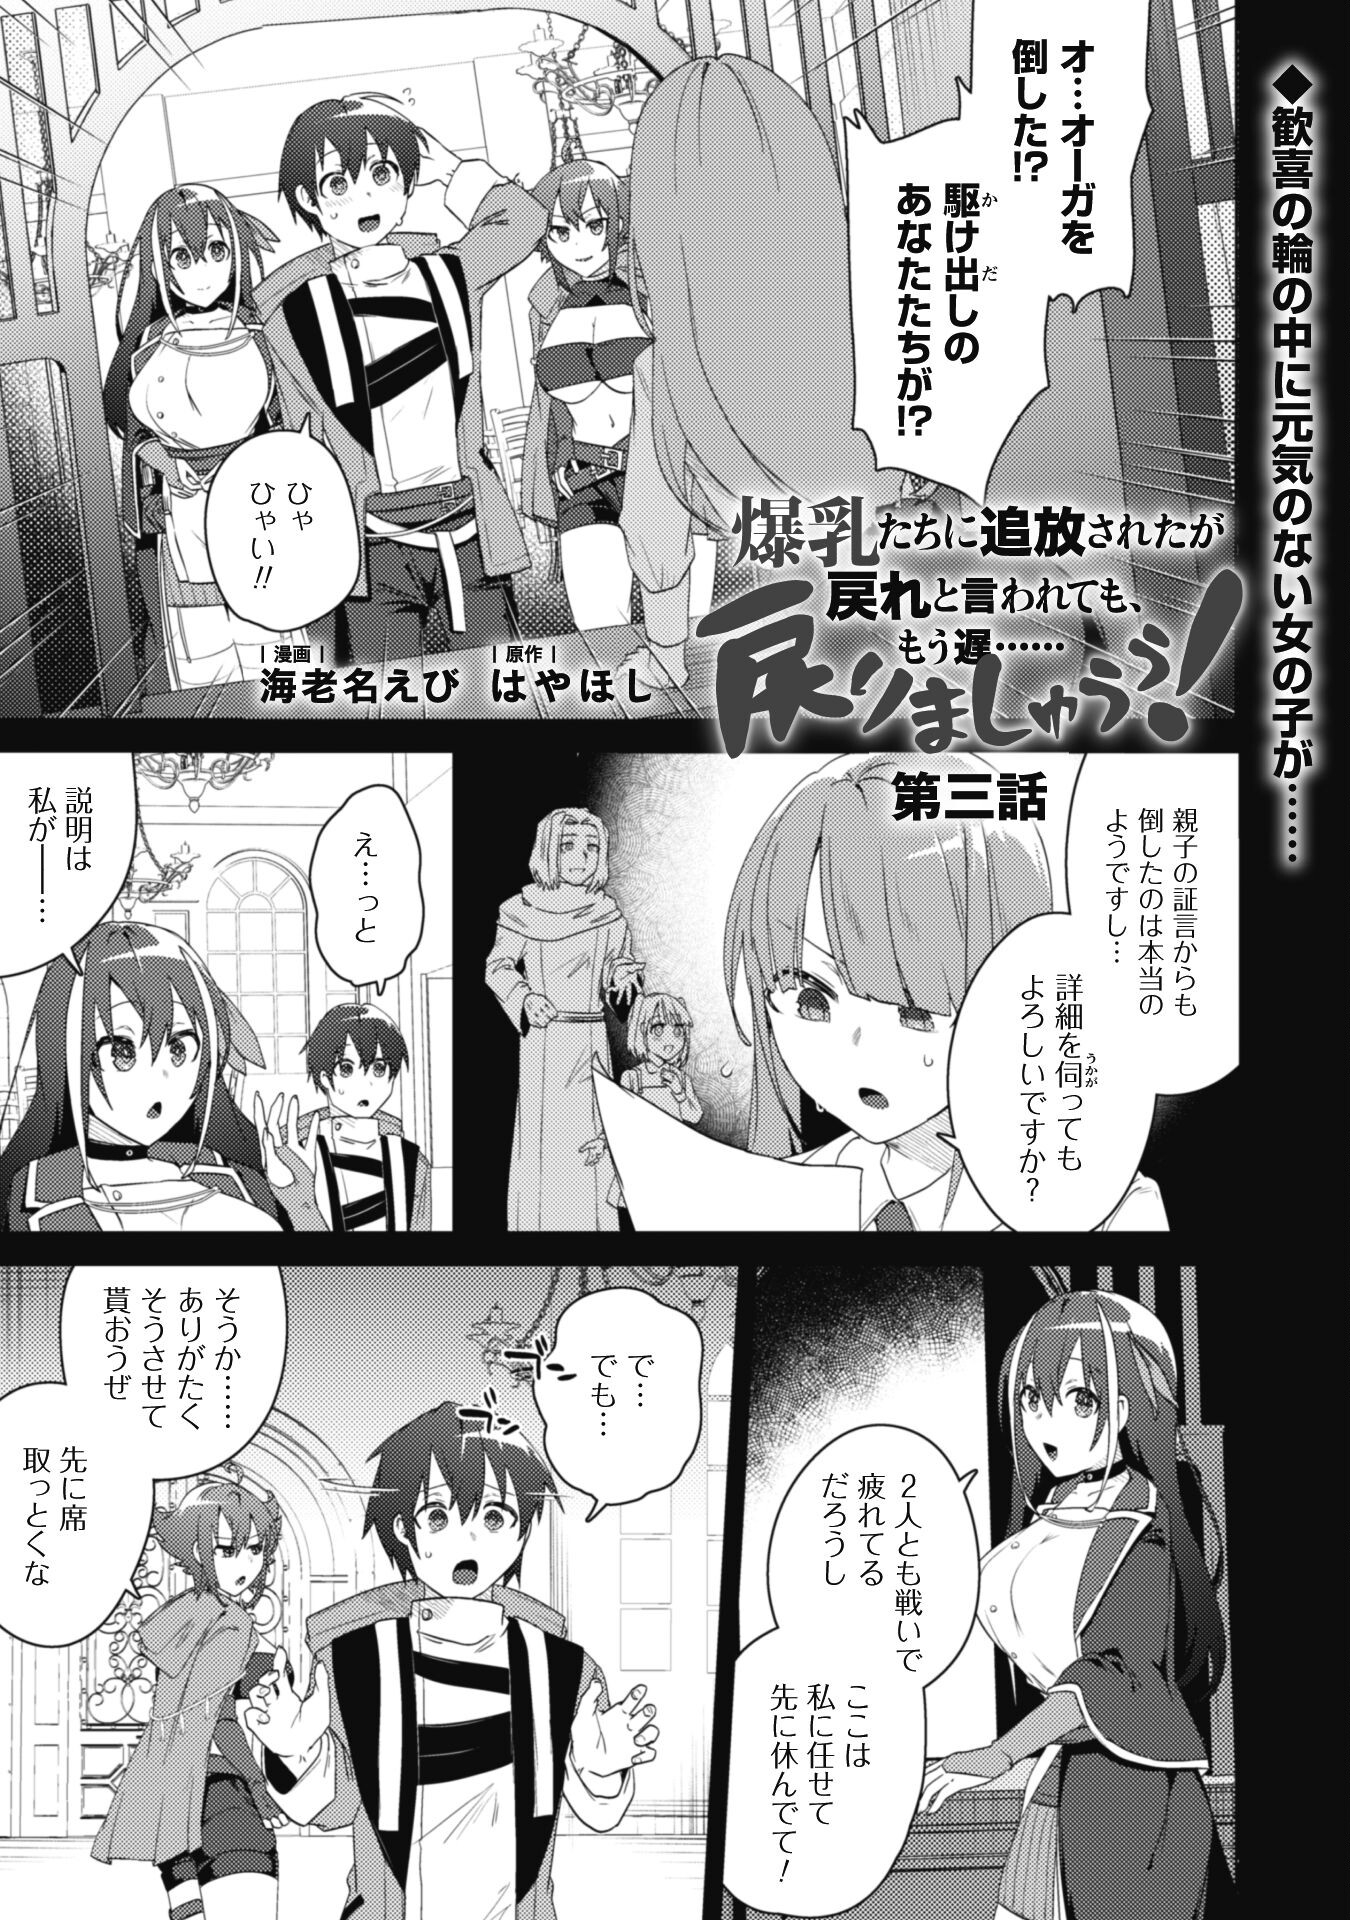 Bakunyuu-tachi ni Tsuihou Sareta ga Modore to Iwaretemo, Mou Oso… Modorimashiyuu! - Chapter 3 - Page 1